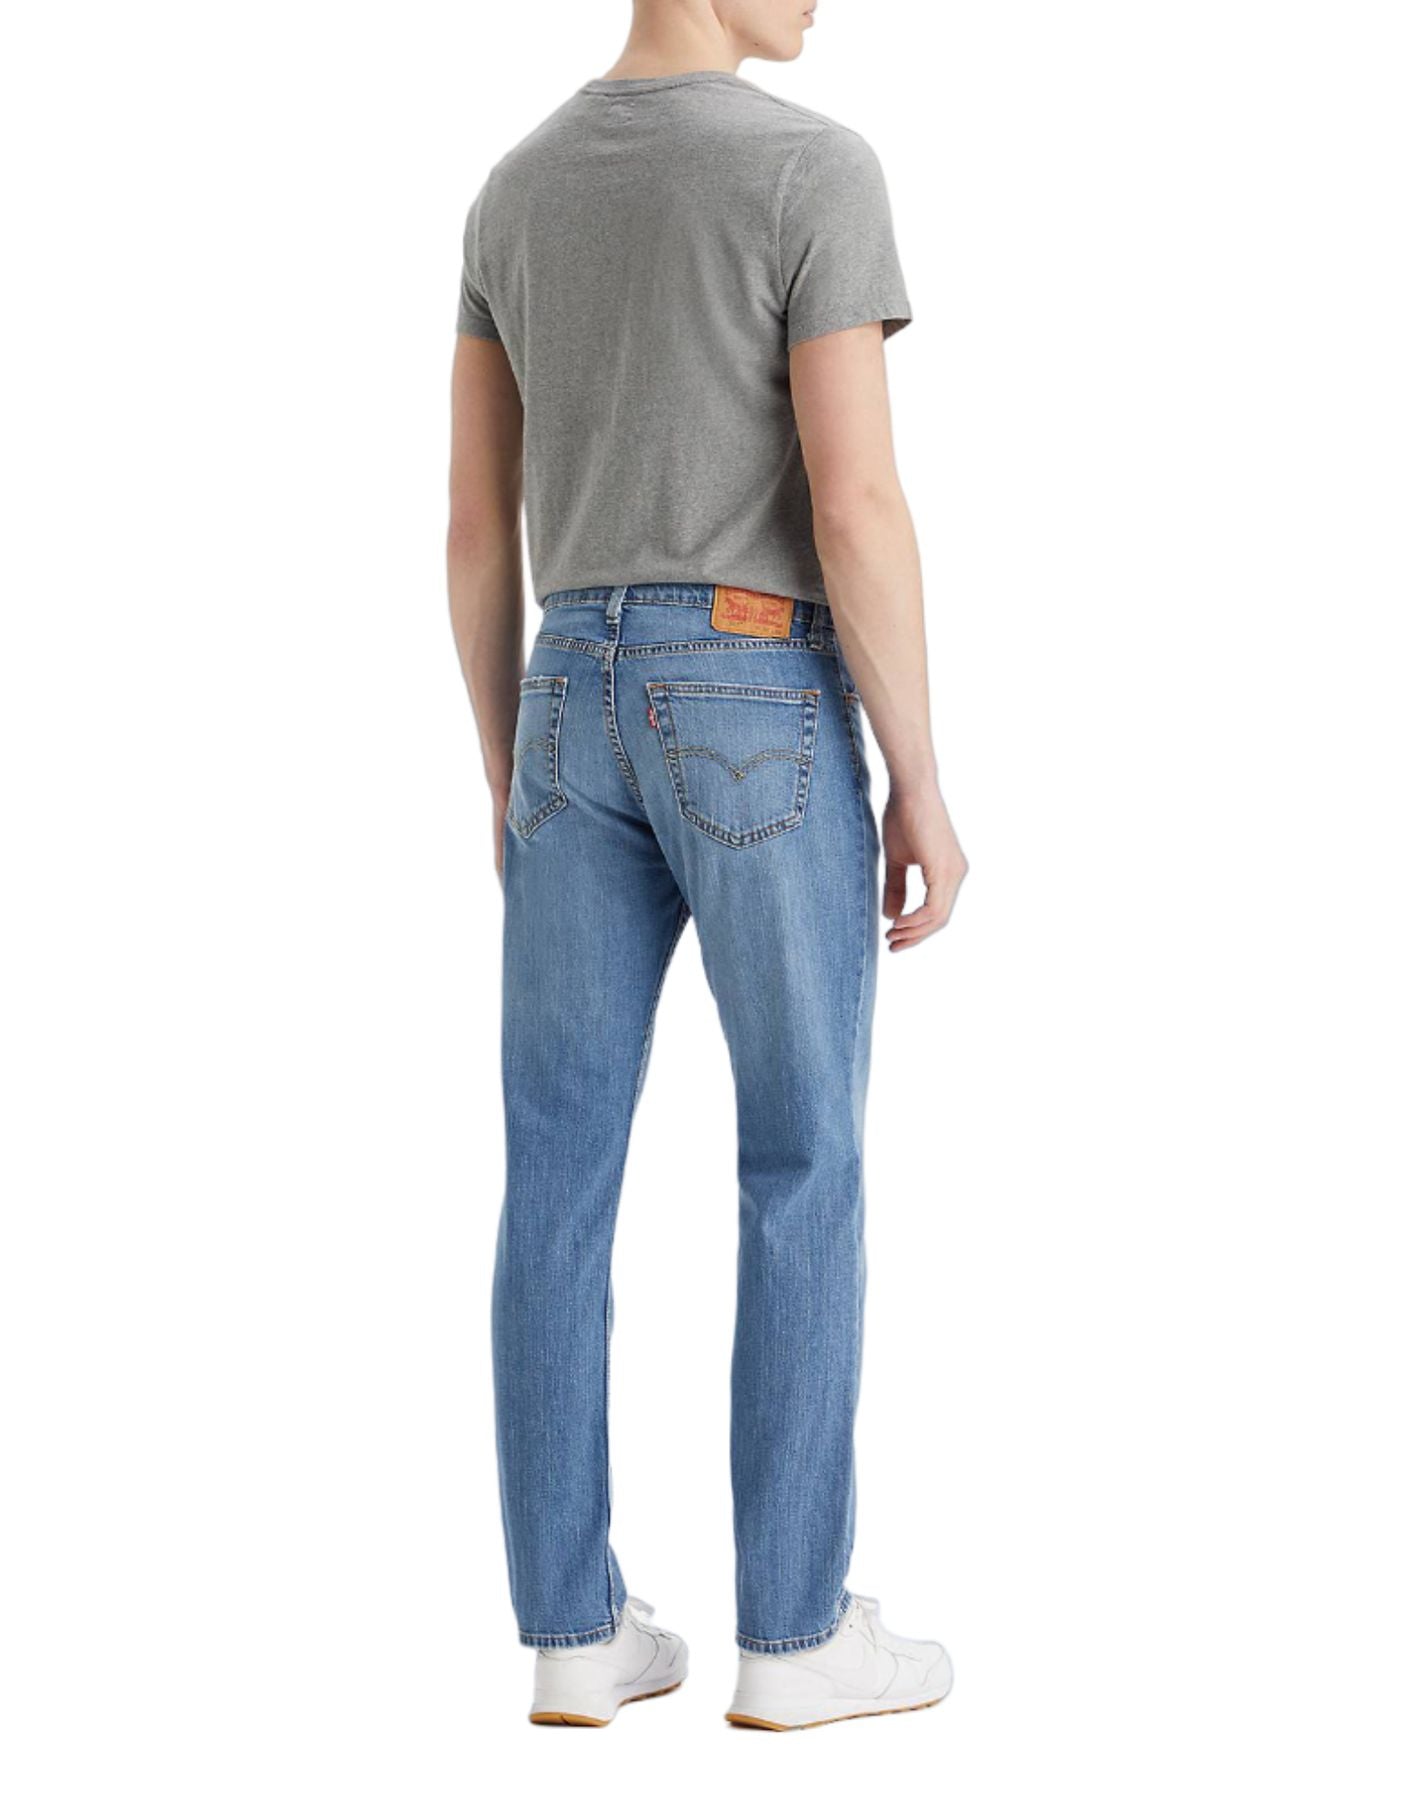 Jeans für Mann 045115646 Marke meine Worte Levi's